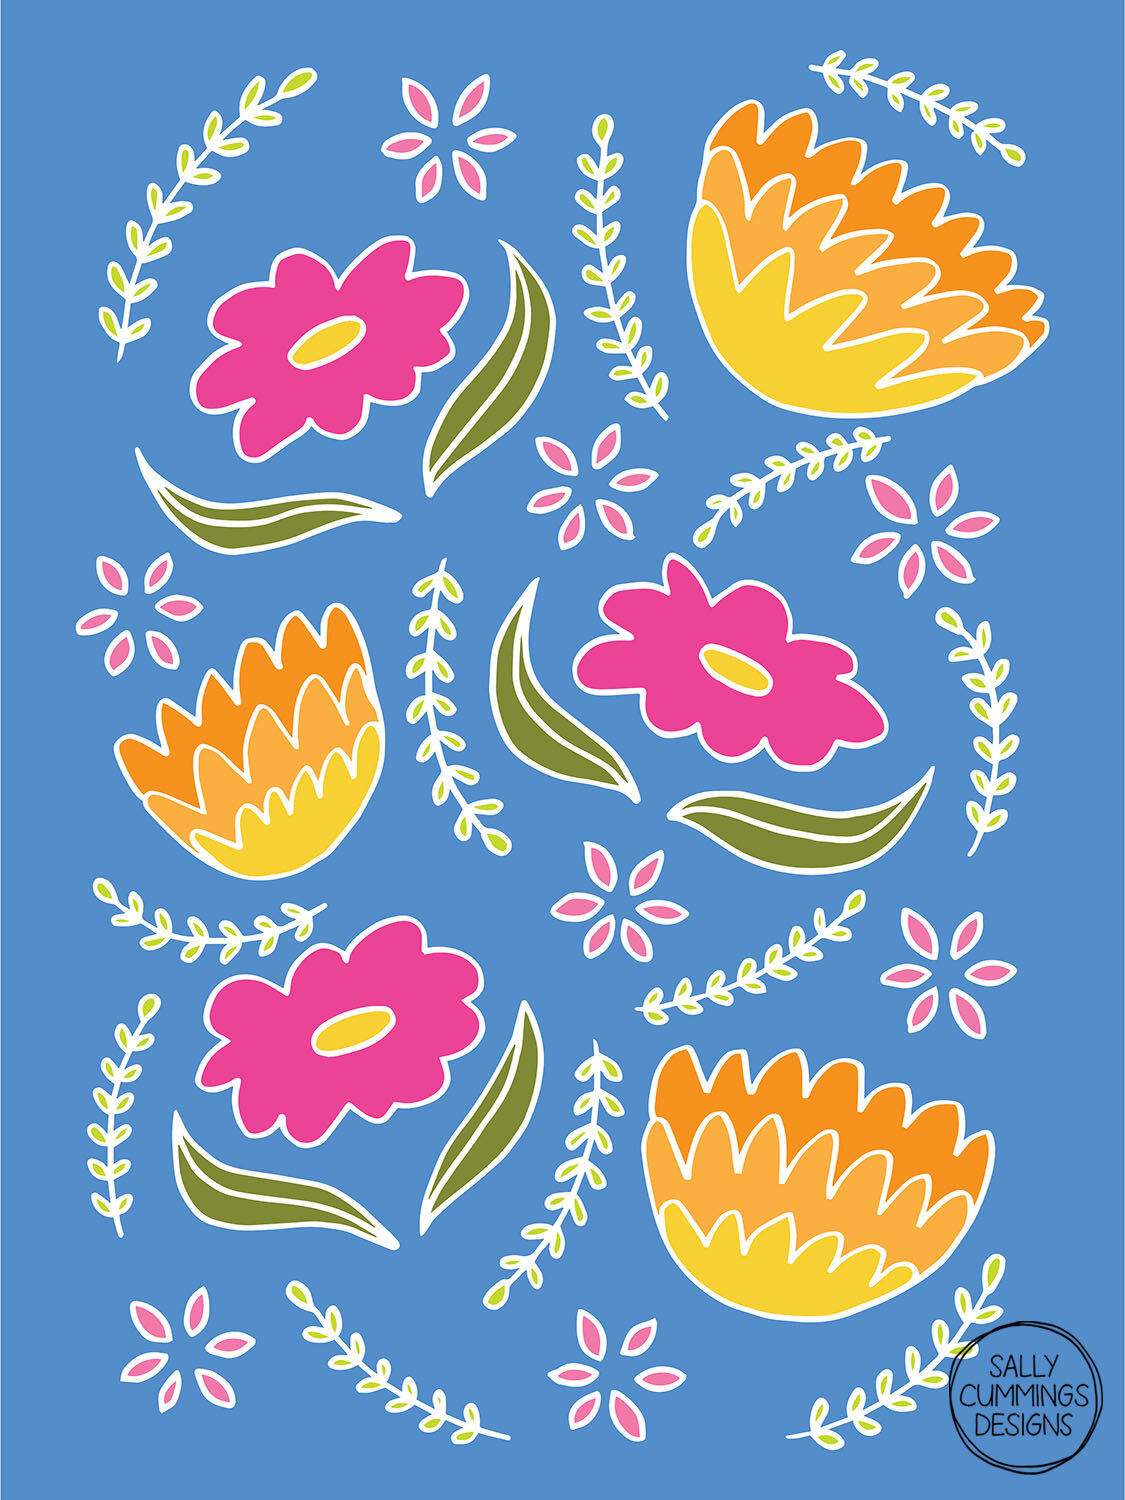 Sally Cummings Designs - May Flowers Blue